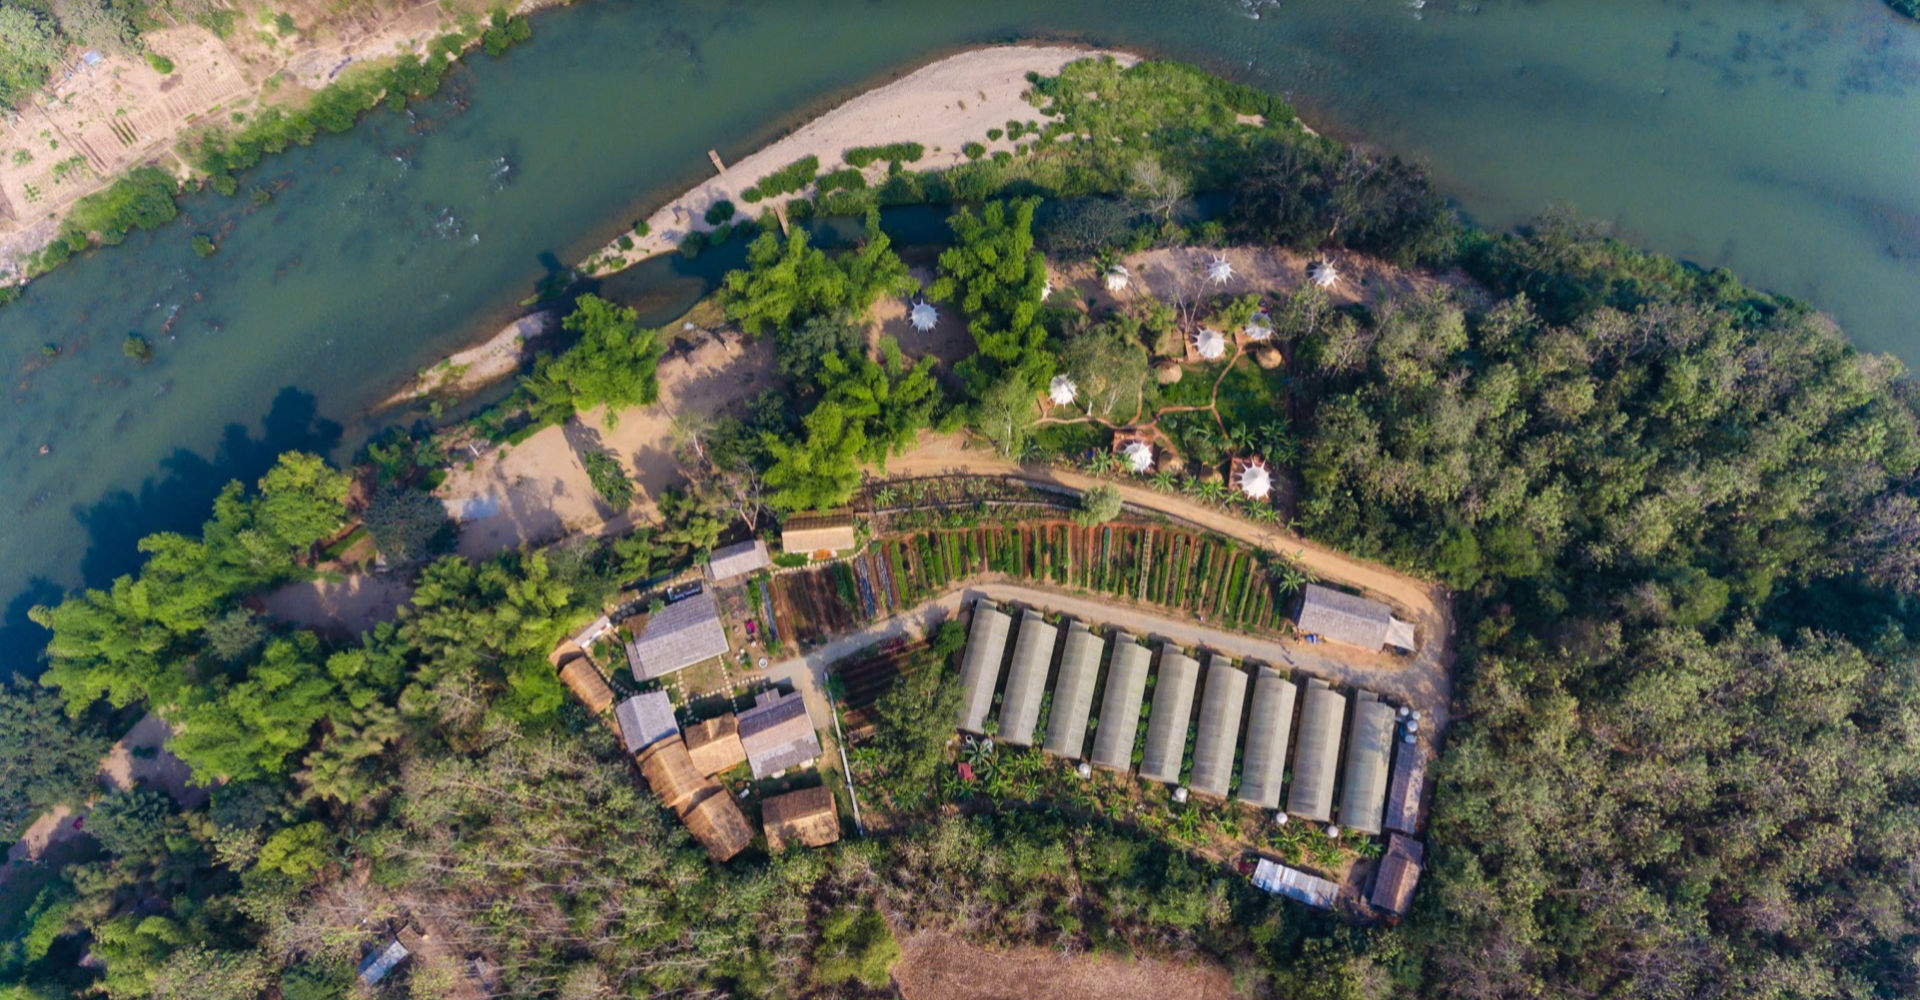 An aerial view of a luang prabang farm near a river.